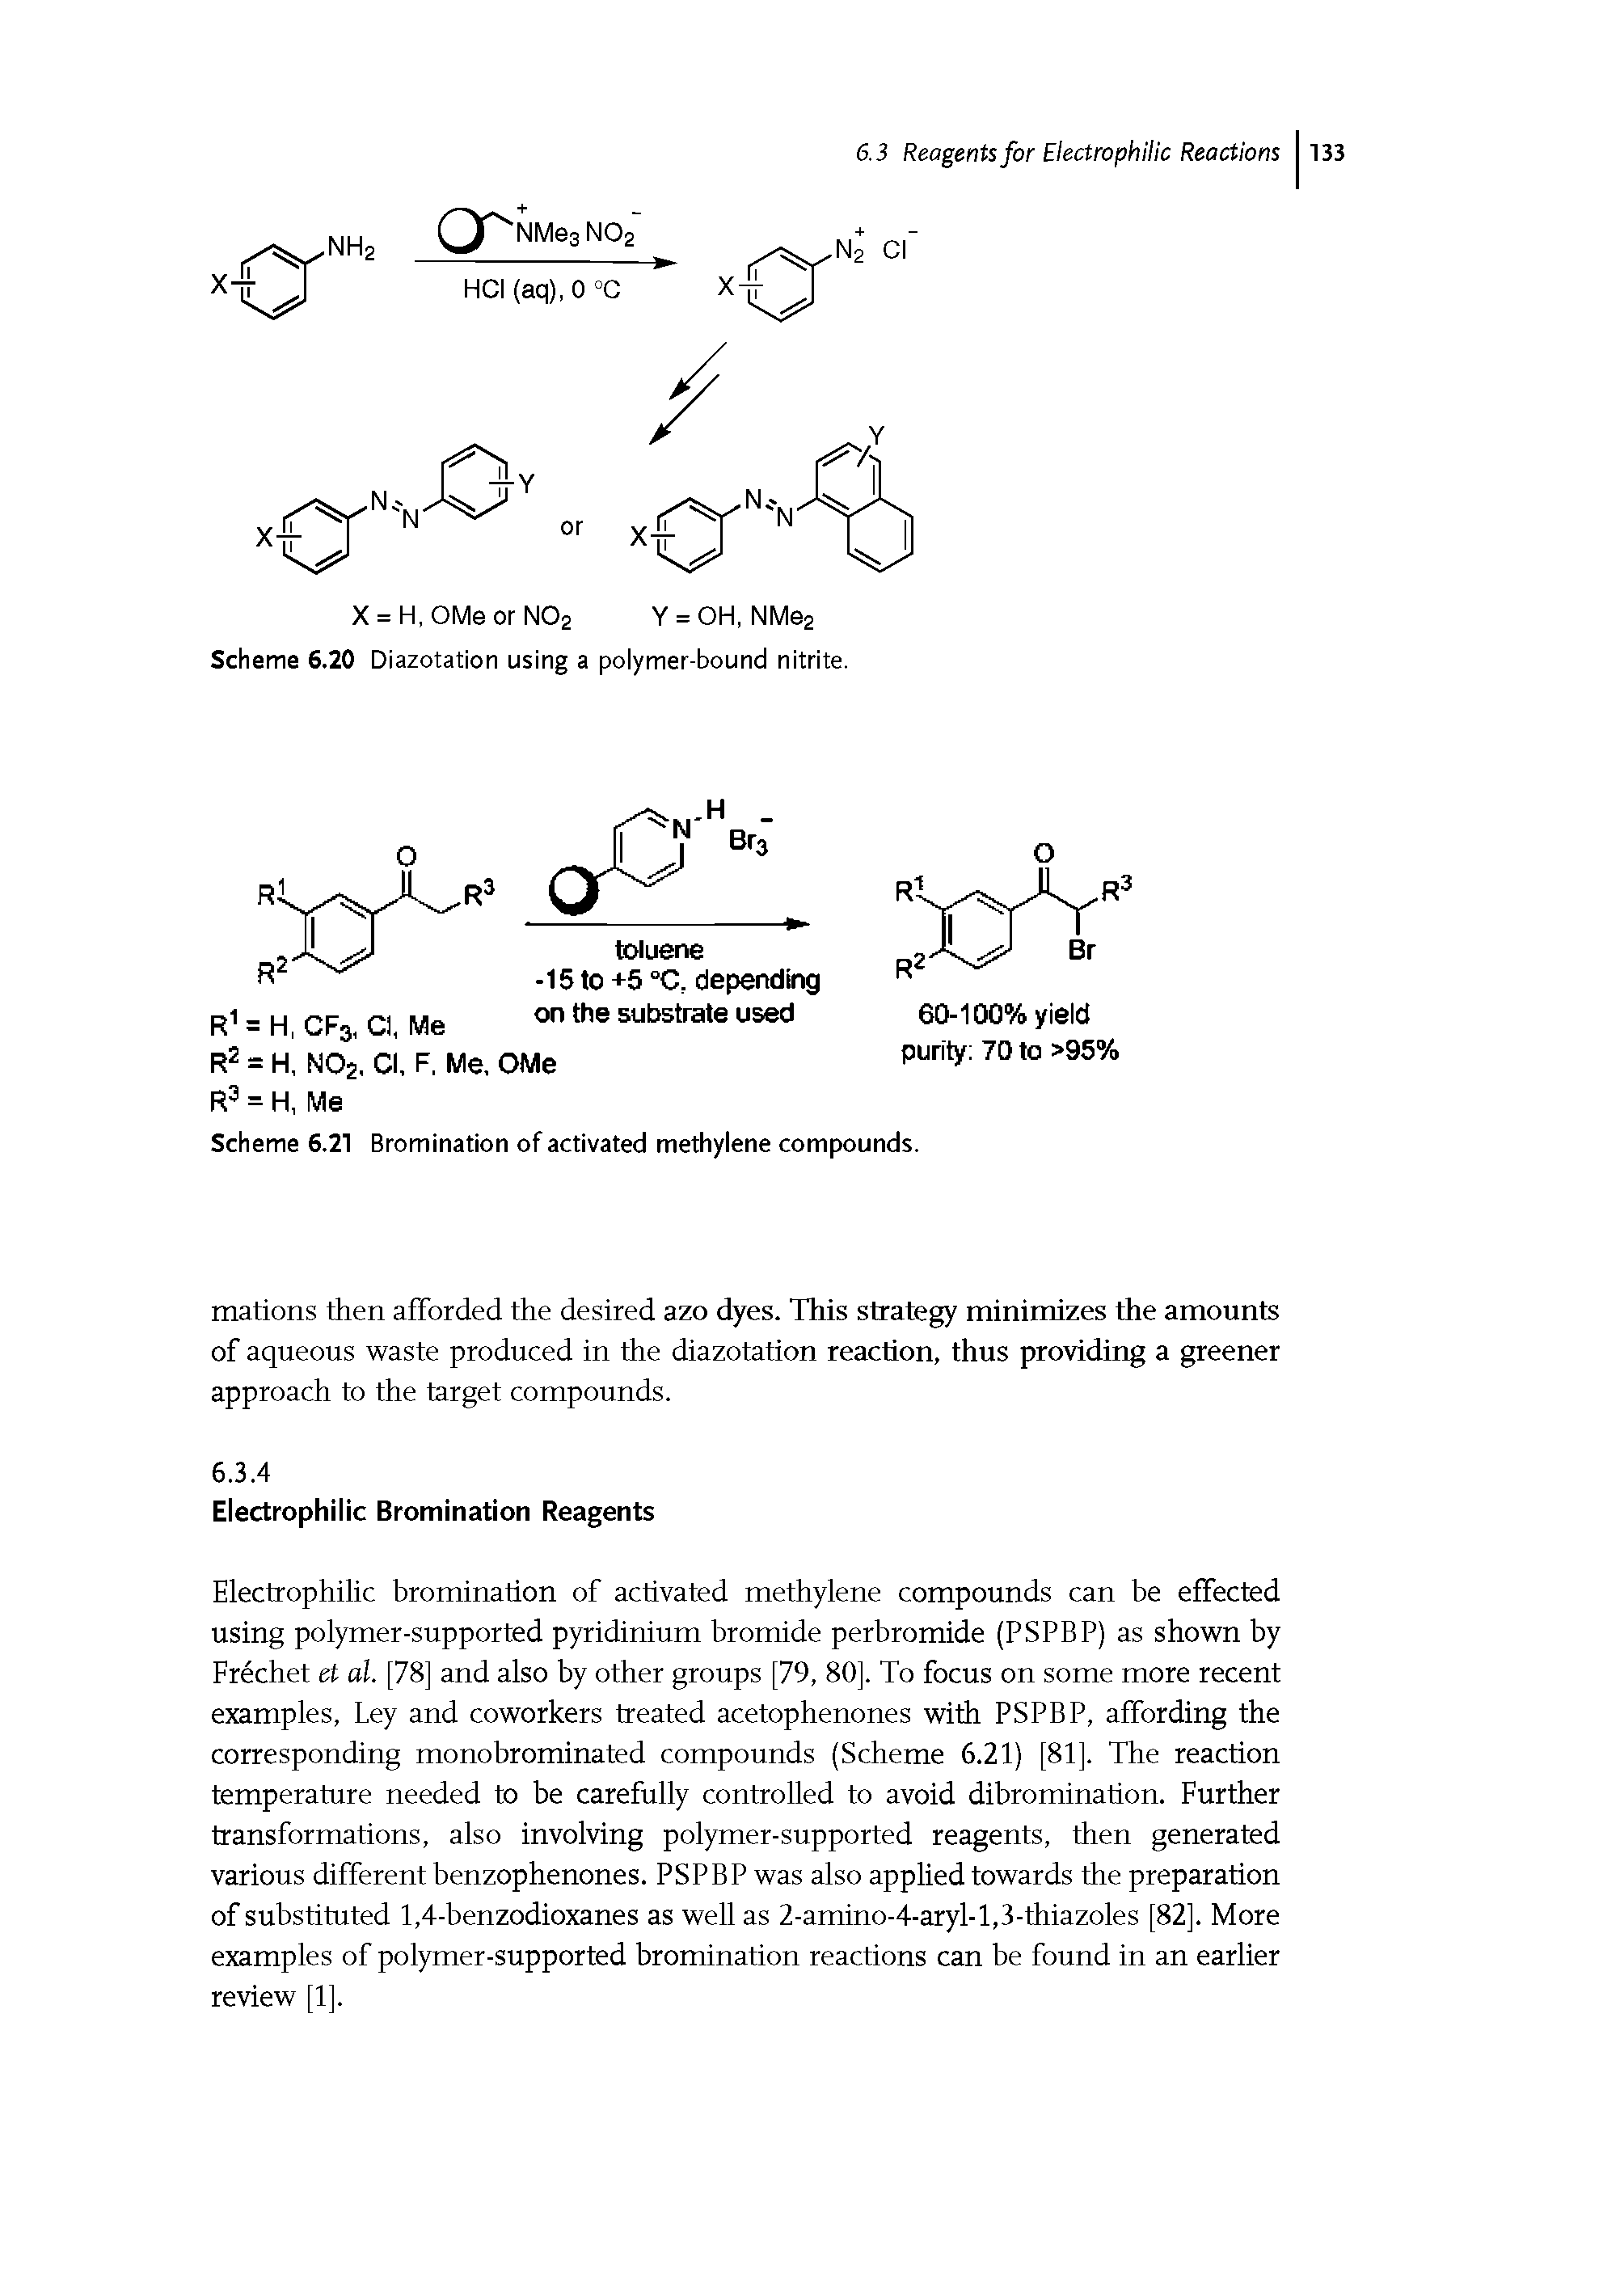 Scheme 6.20 Diazotation using a polymer-bound nitrite.